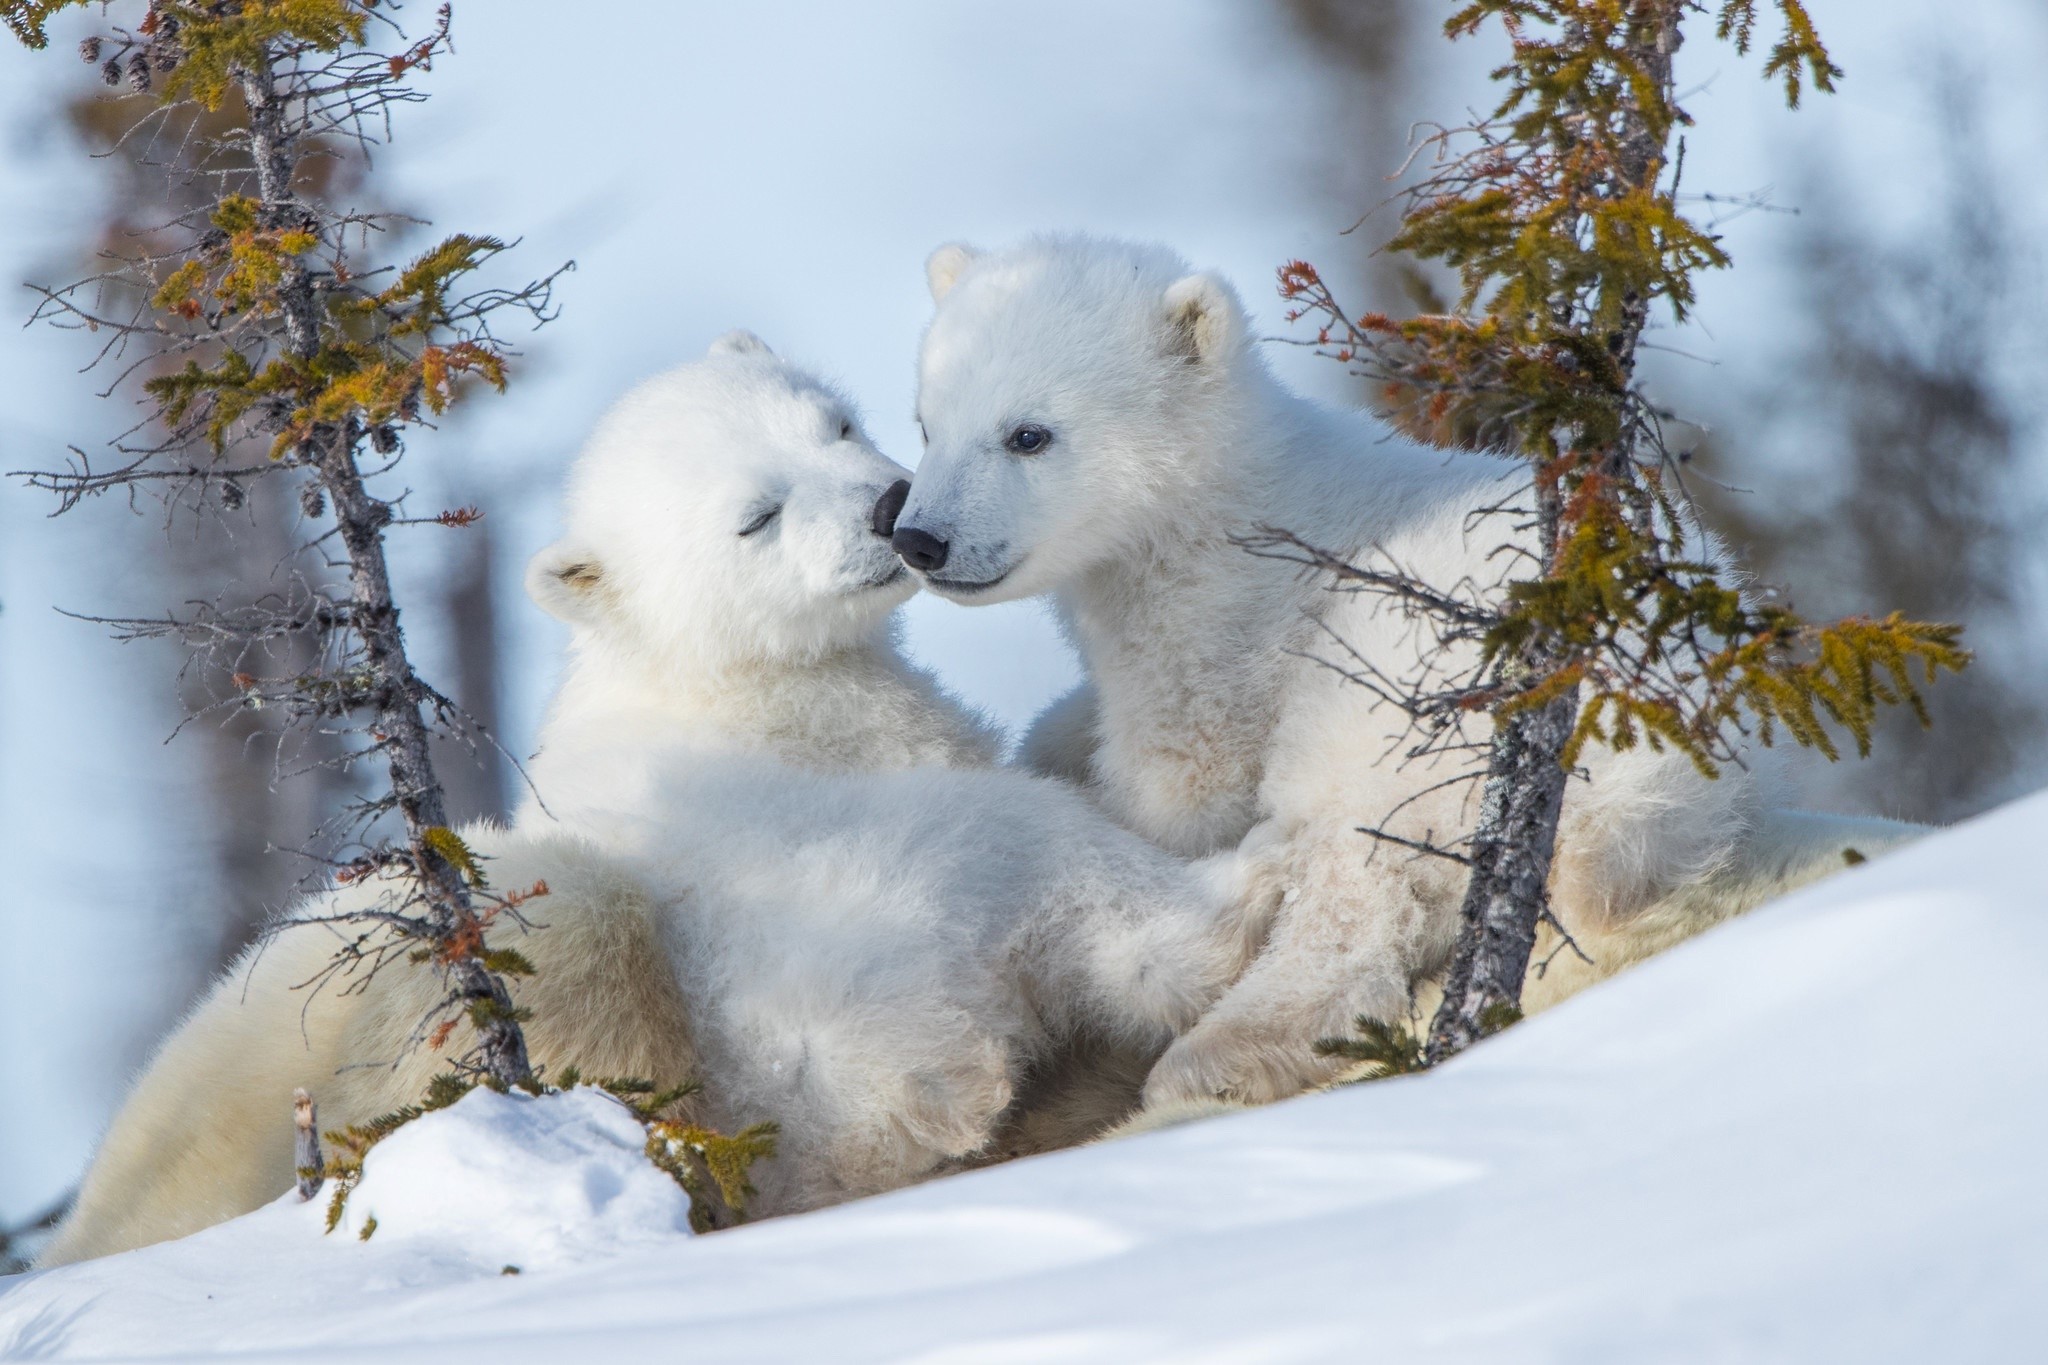 دانلود تصویر زمینه بسیار زیبا و جذاب از بچه خرس های قطبی